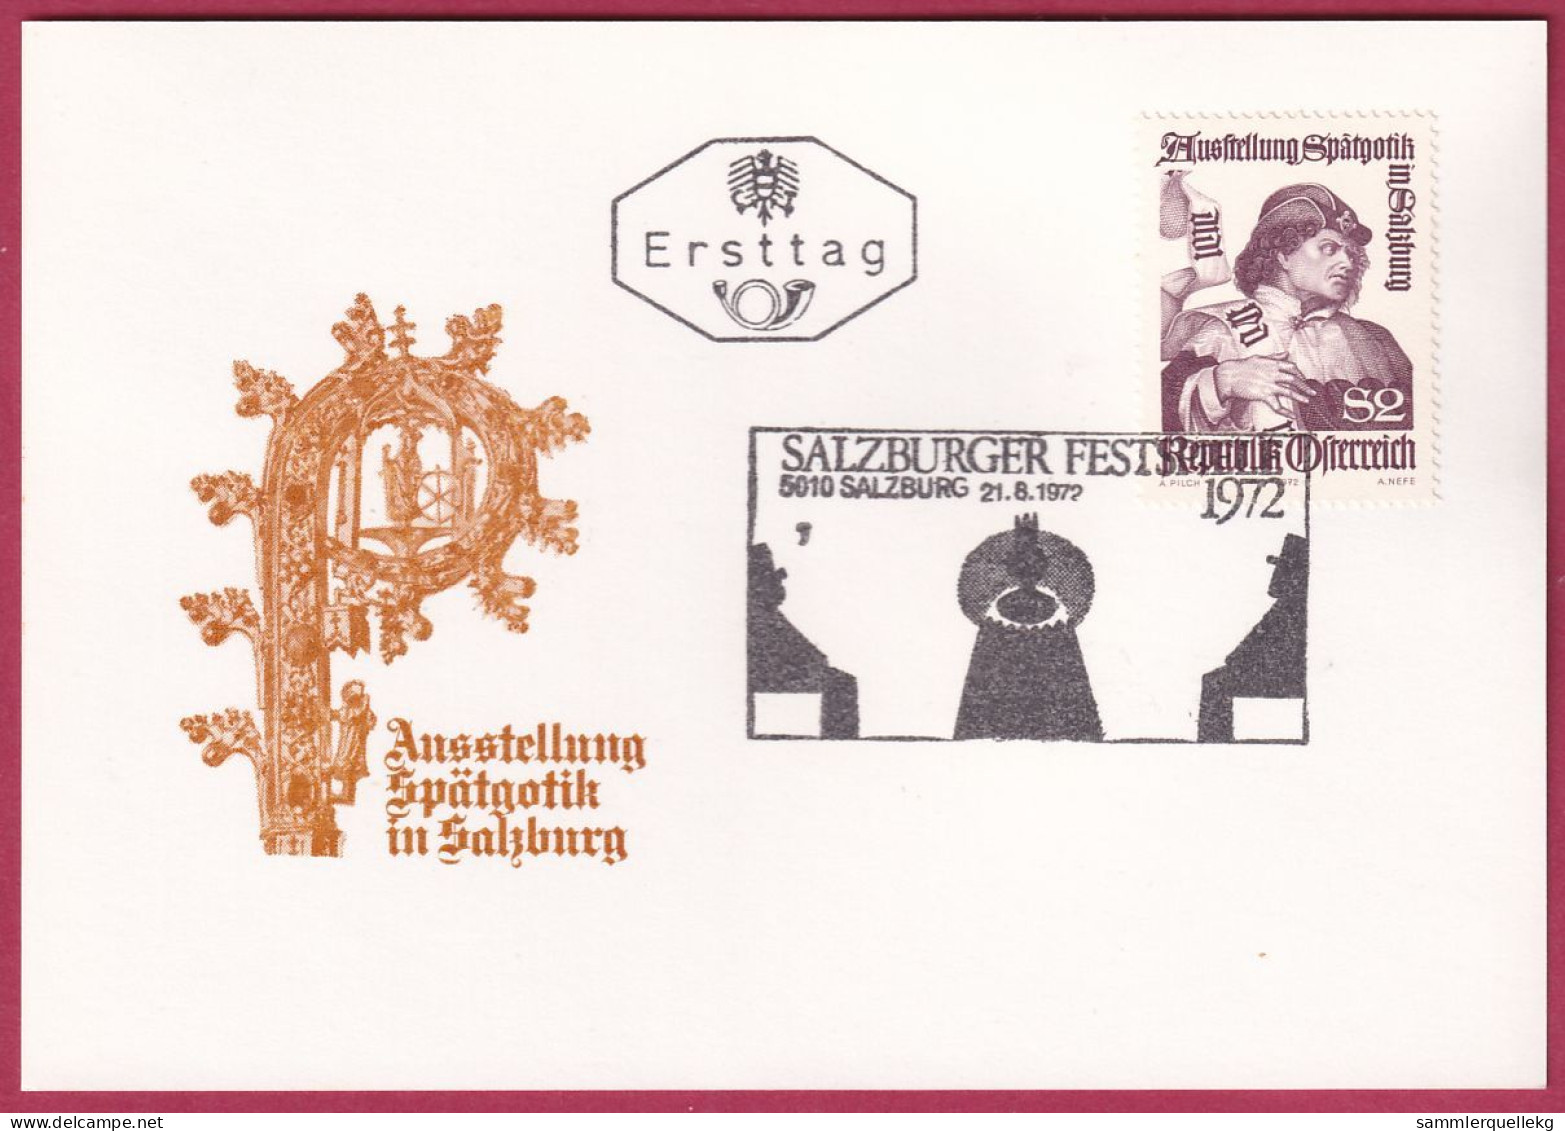 Österreich 1393 Ersttag Auf Karte Mit Sonderstempel 21. 8. 1972, Ausstelung Spätgotik In Salzburg (Nr.10.146) - FDC